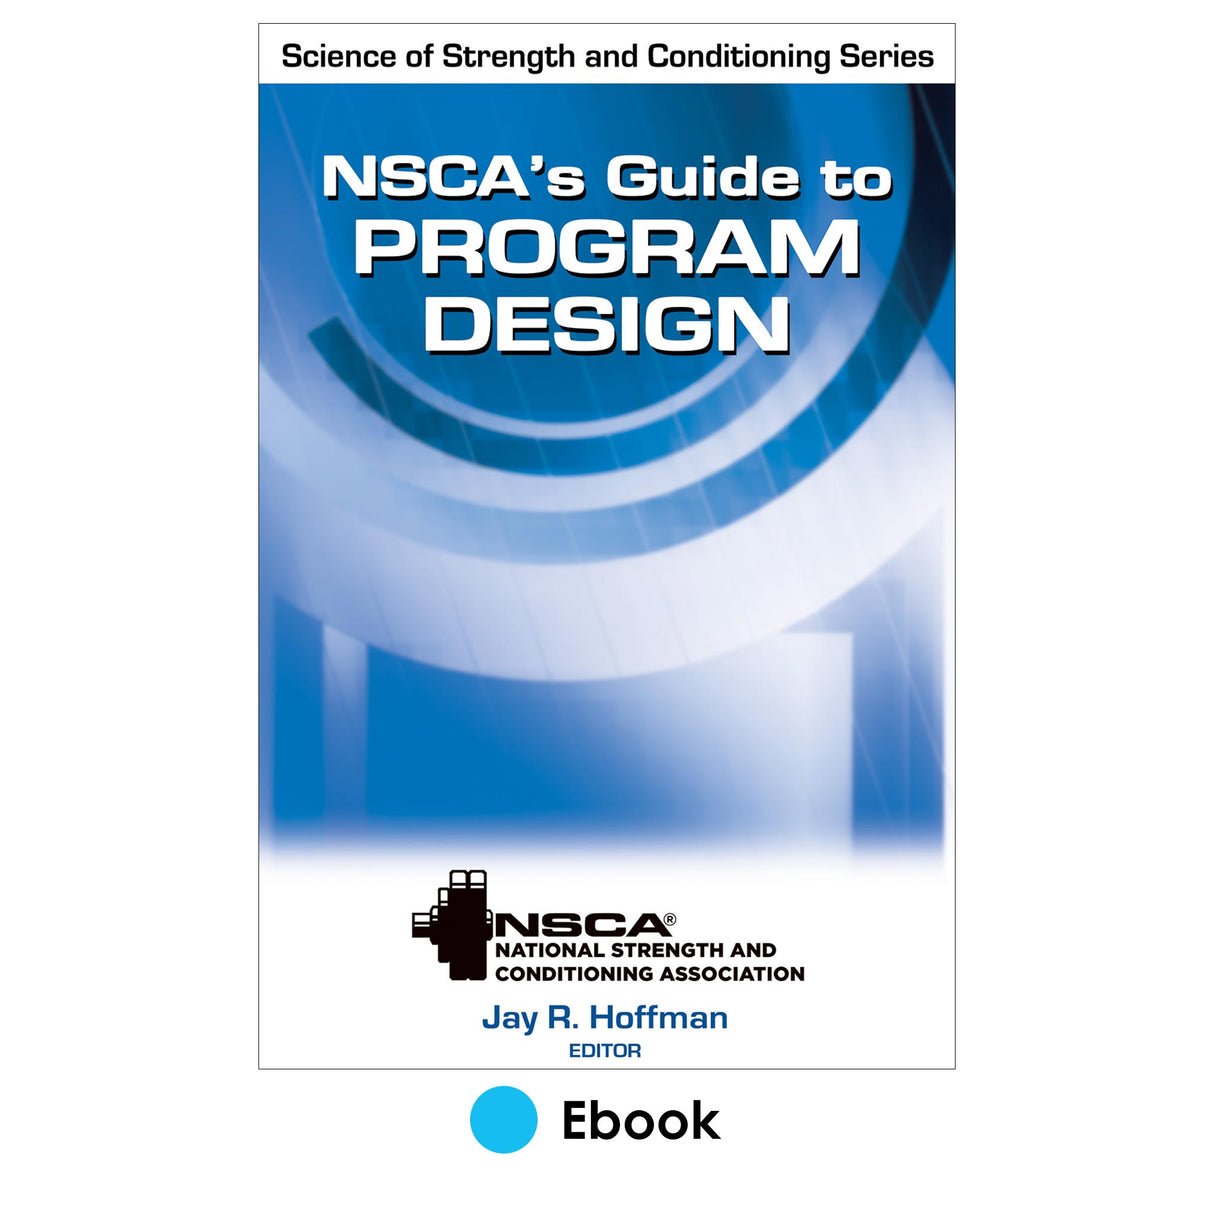 NSCA's Guide to Program Design PDF